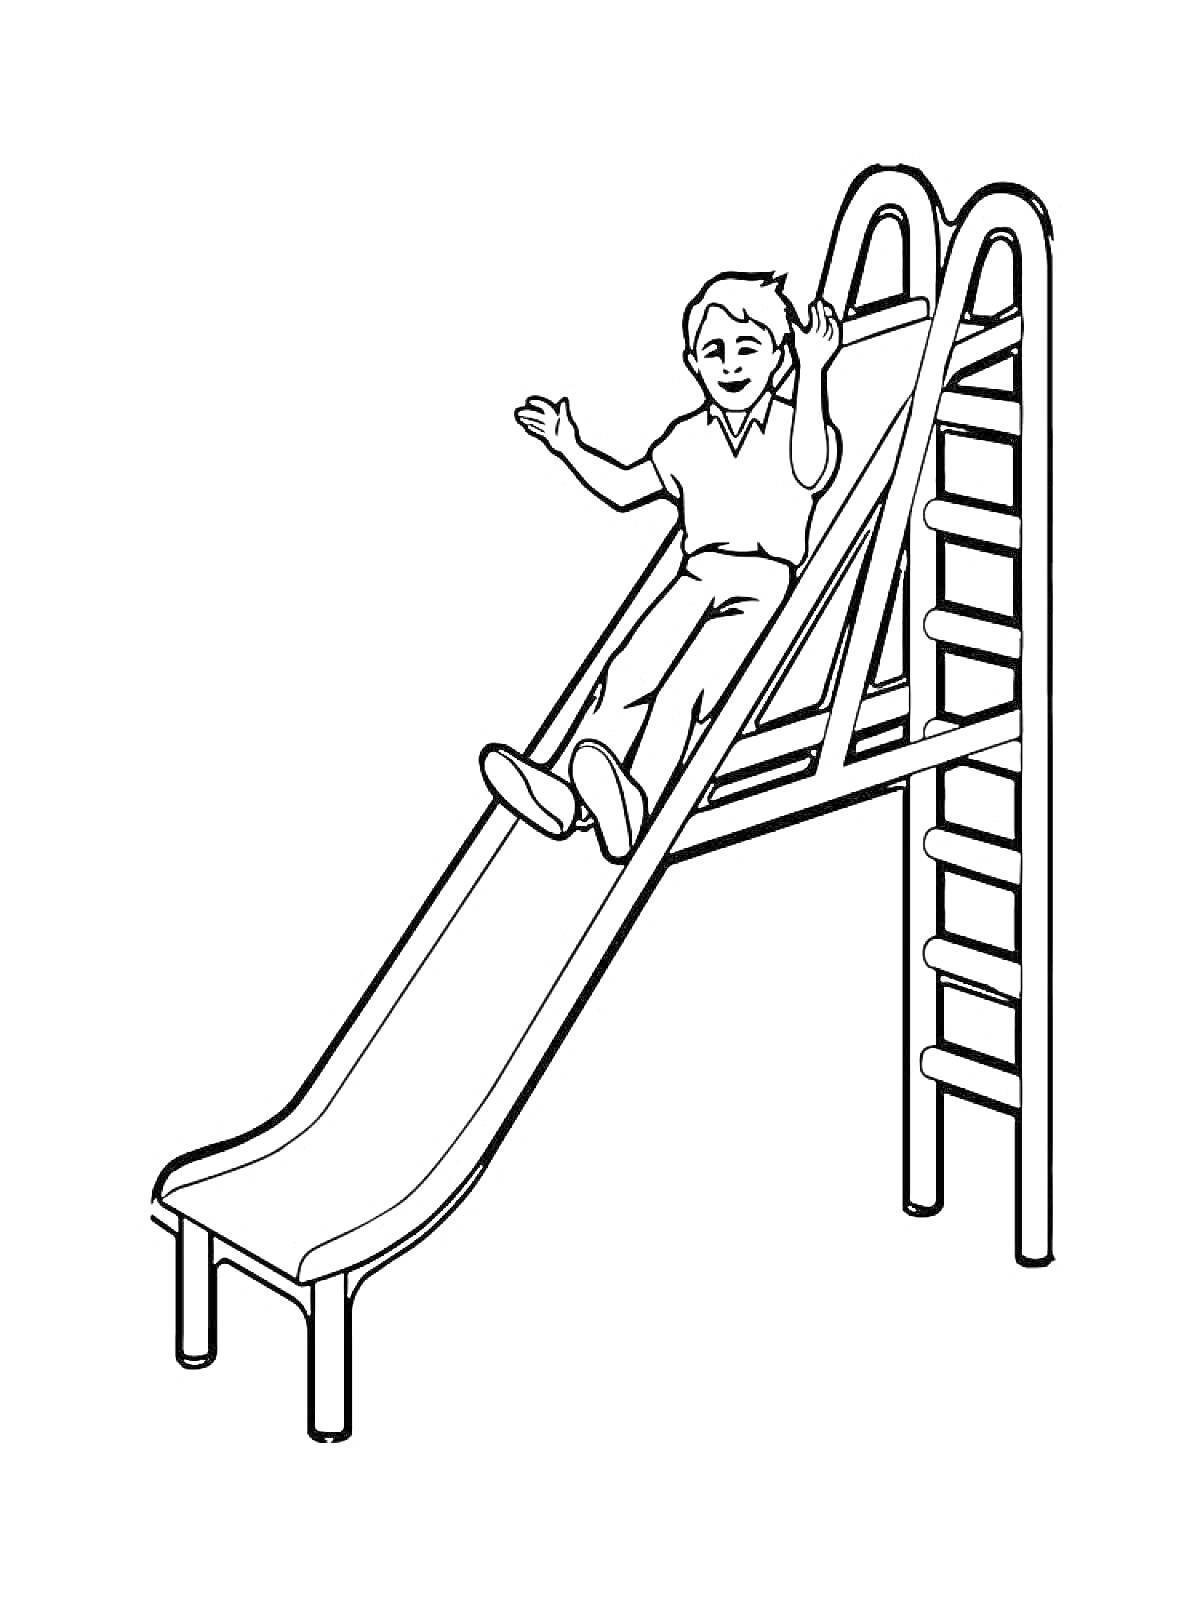 Раскраска Ребенок на горке, горка с лестницей